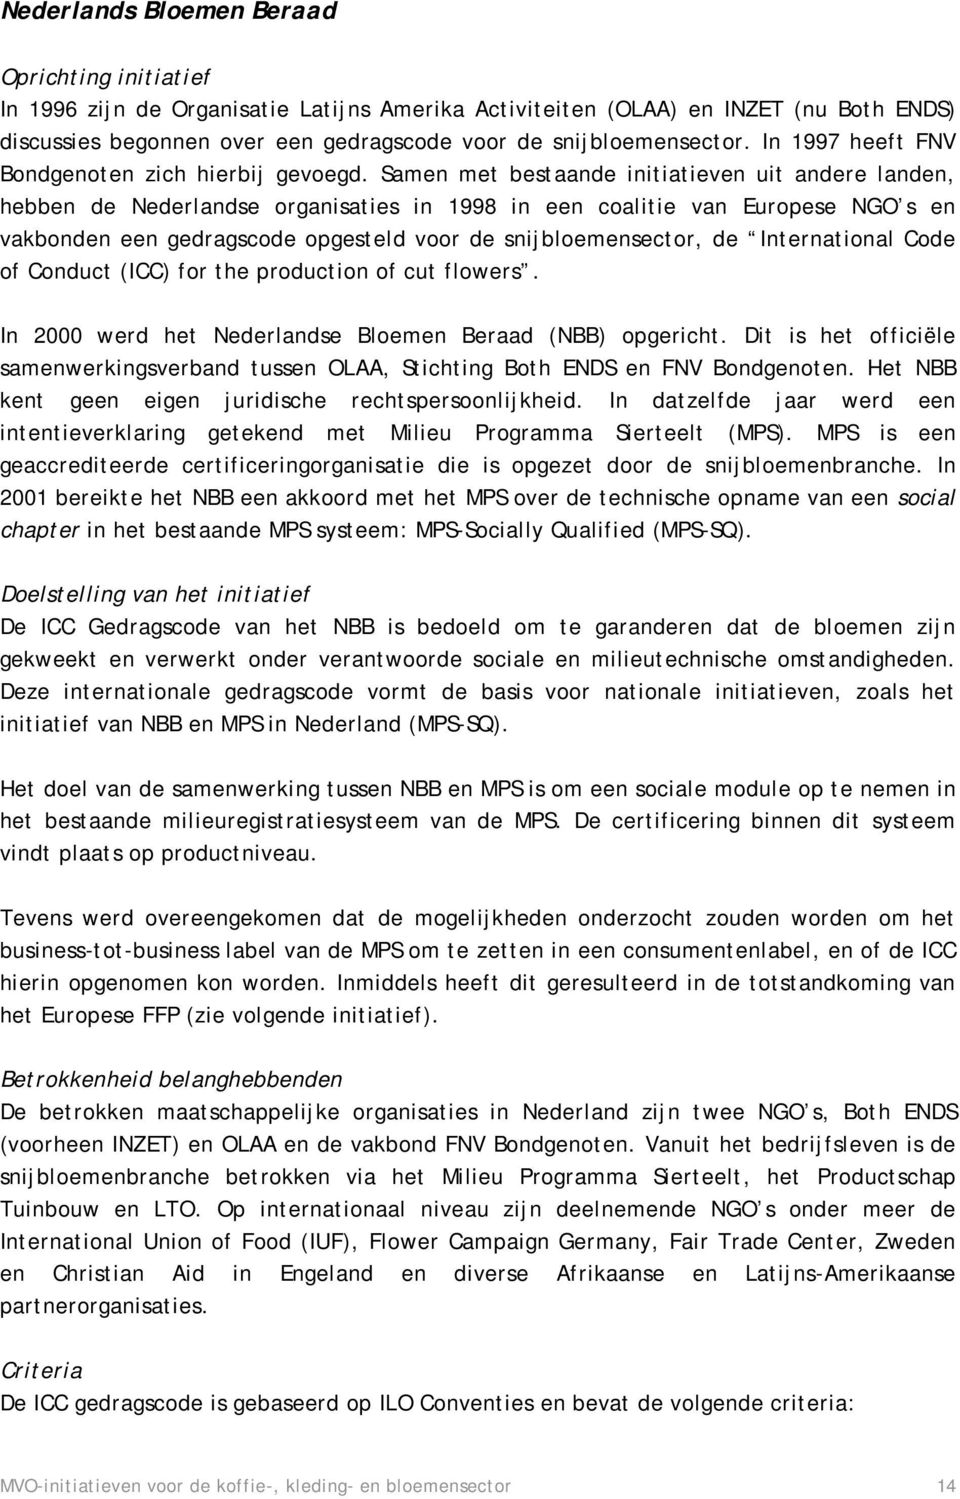 Samen met bestaande initiatieven uit andere landen, hebben de Nederlandse organisaties in 1998 in een coalitie van Europese NGO s en vakbonden een gedragscode opgesteld voor de snijbloemensector, de